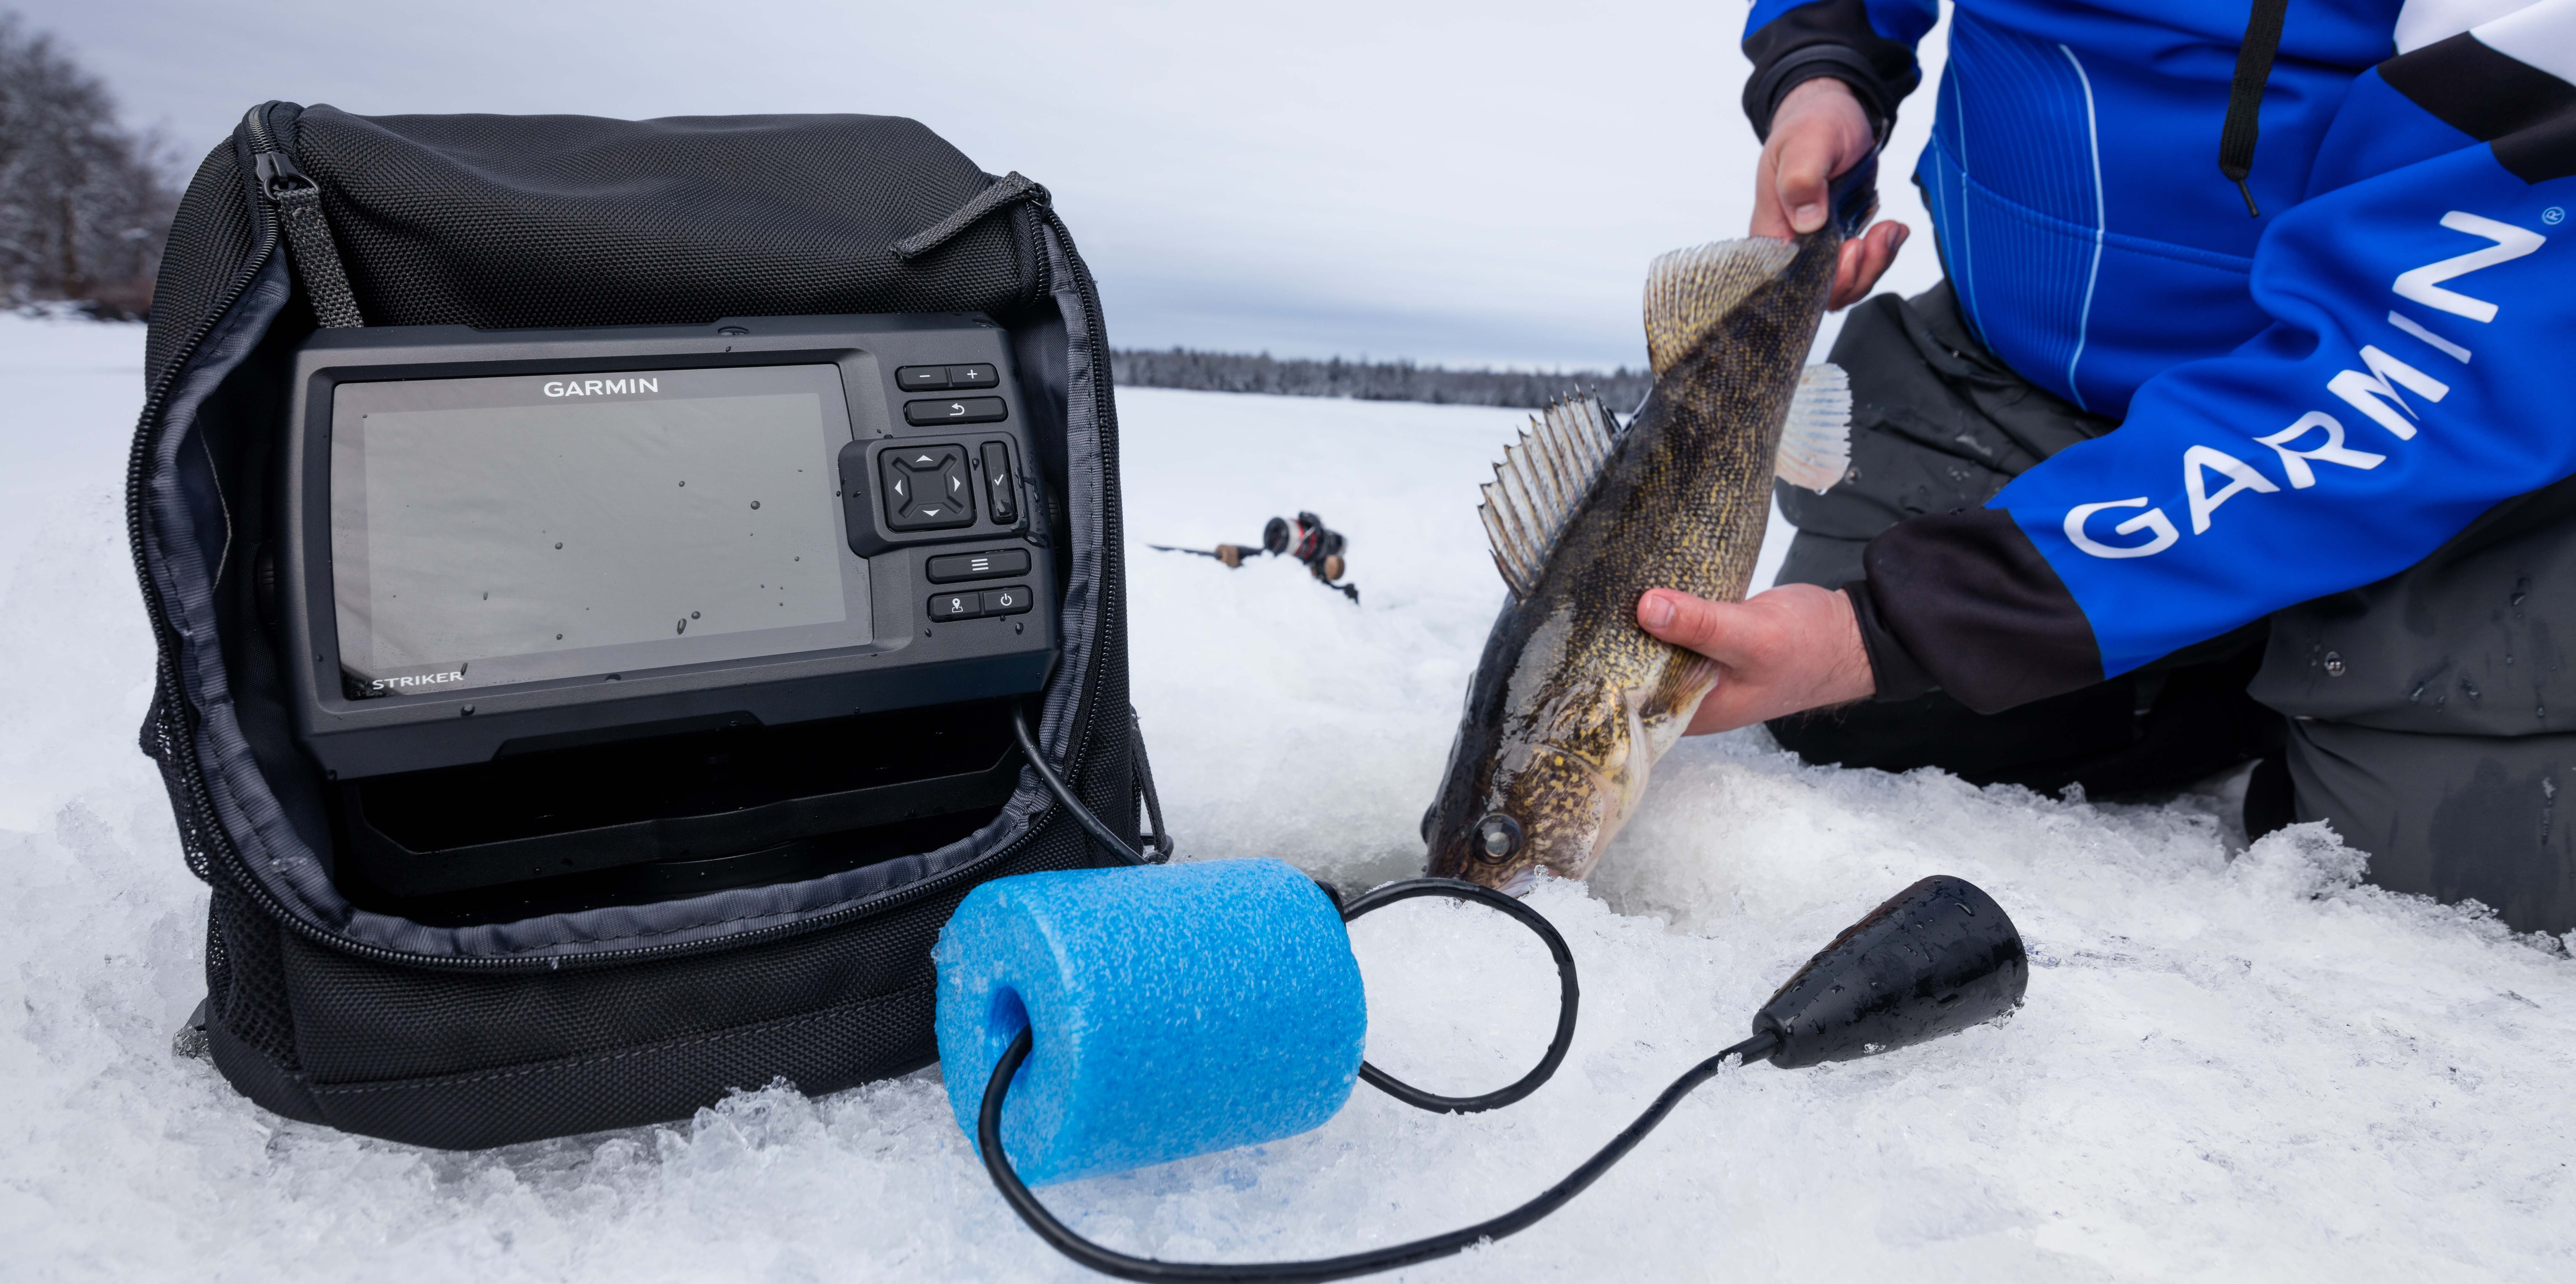 Рейтинг лучших эхолотов для зимней рыбалки: производители, какой выбрать, рейтинг топ-7